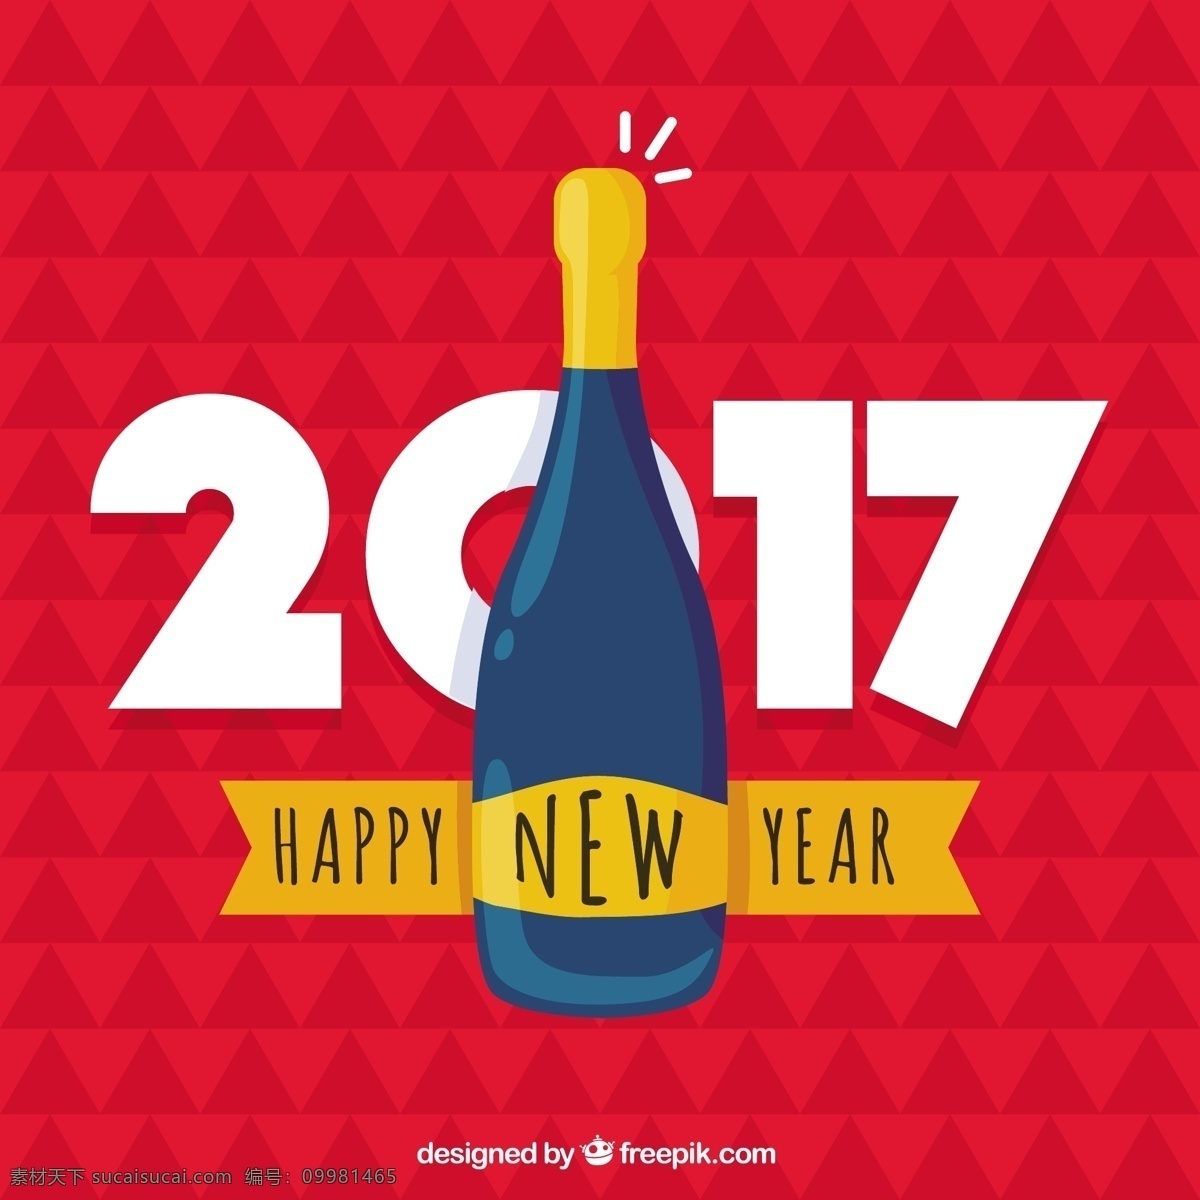 香槟 酒瓶 新年 背景 香槟酒瓶 新年背景